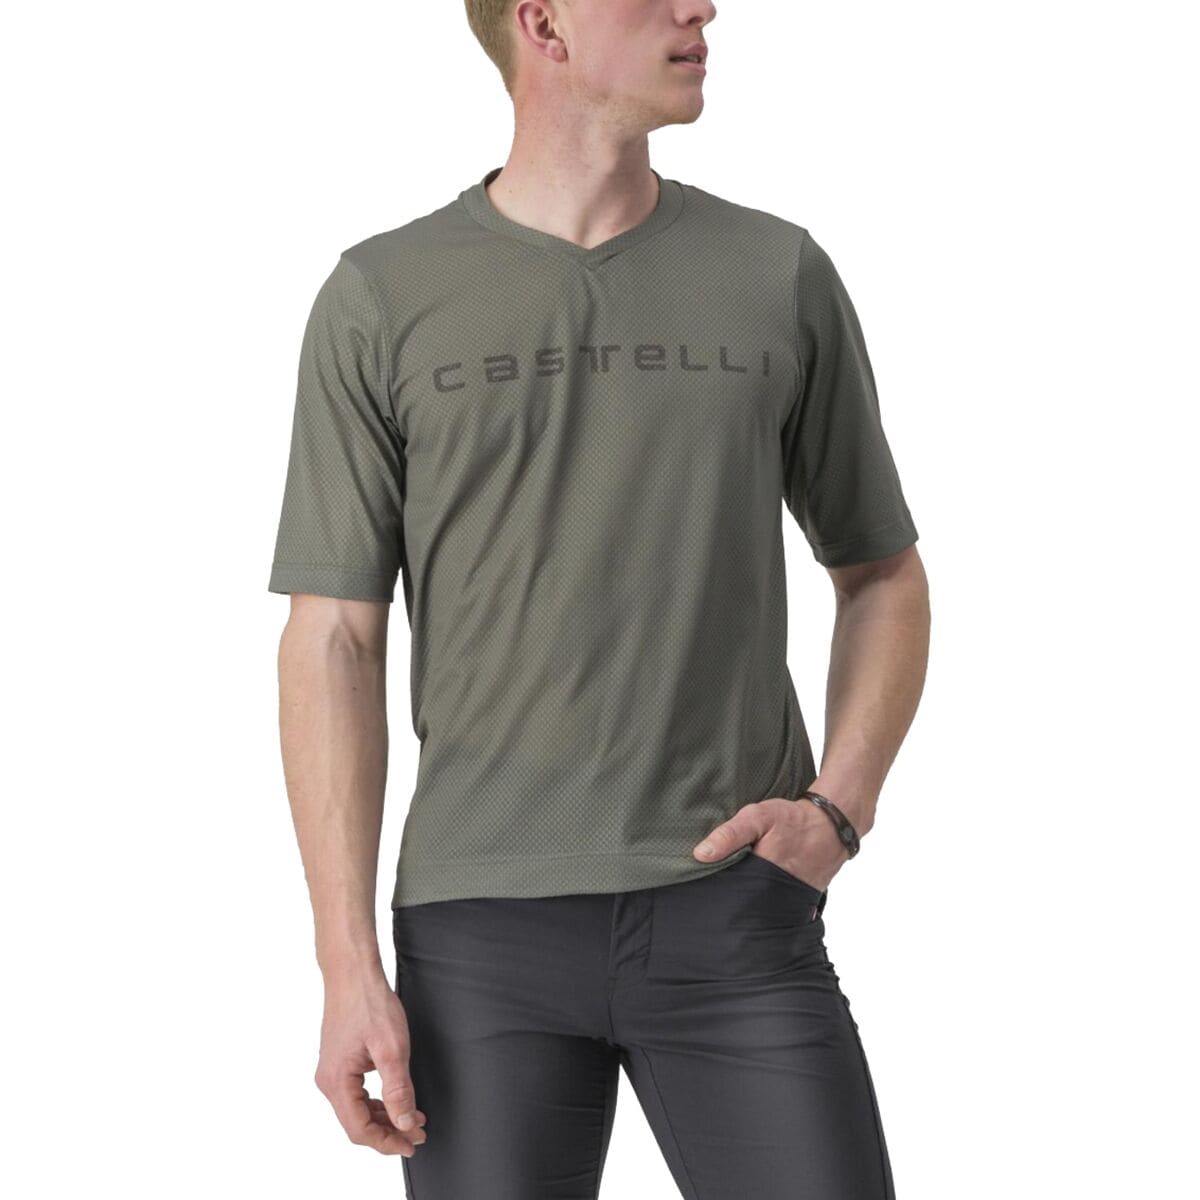 Castelli Trail Tech 2 T-Shirt – Men’s Forest Gray, XL